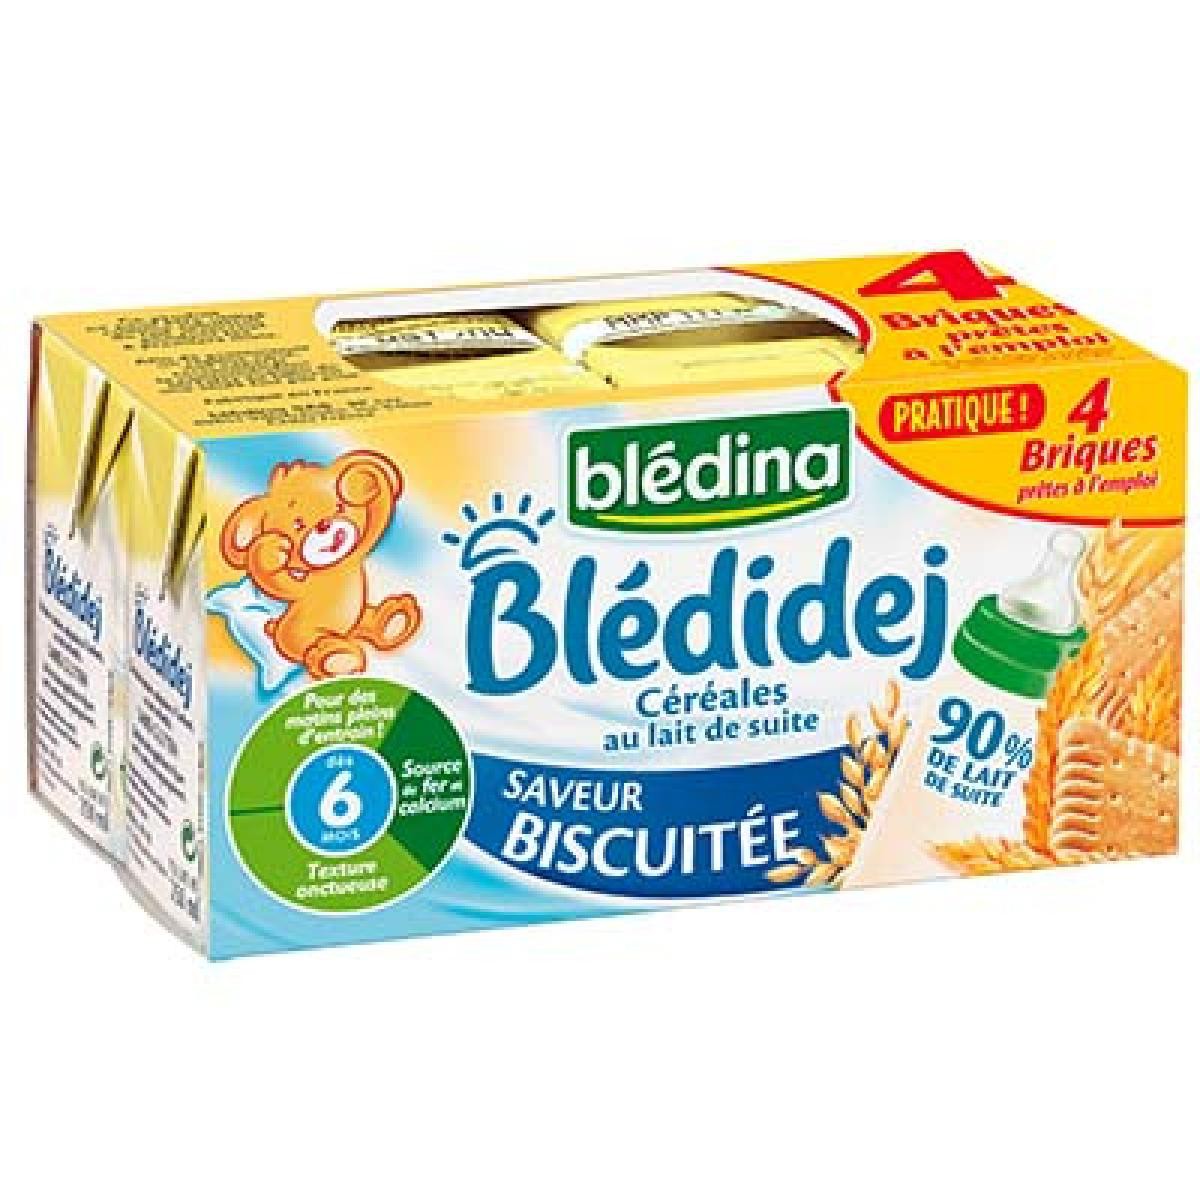 Blédidej saveur biscuit dès 6 mois x4 briques 1L - BLÉDINA BLÉDINA  3041090013928 : Netto Le Teil – Supermarché & Drive